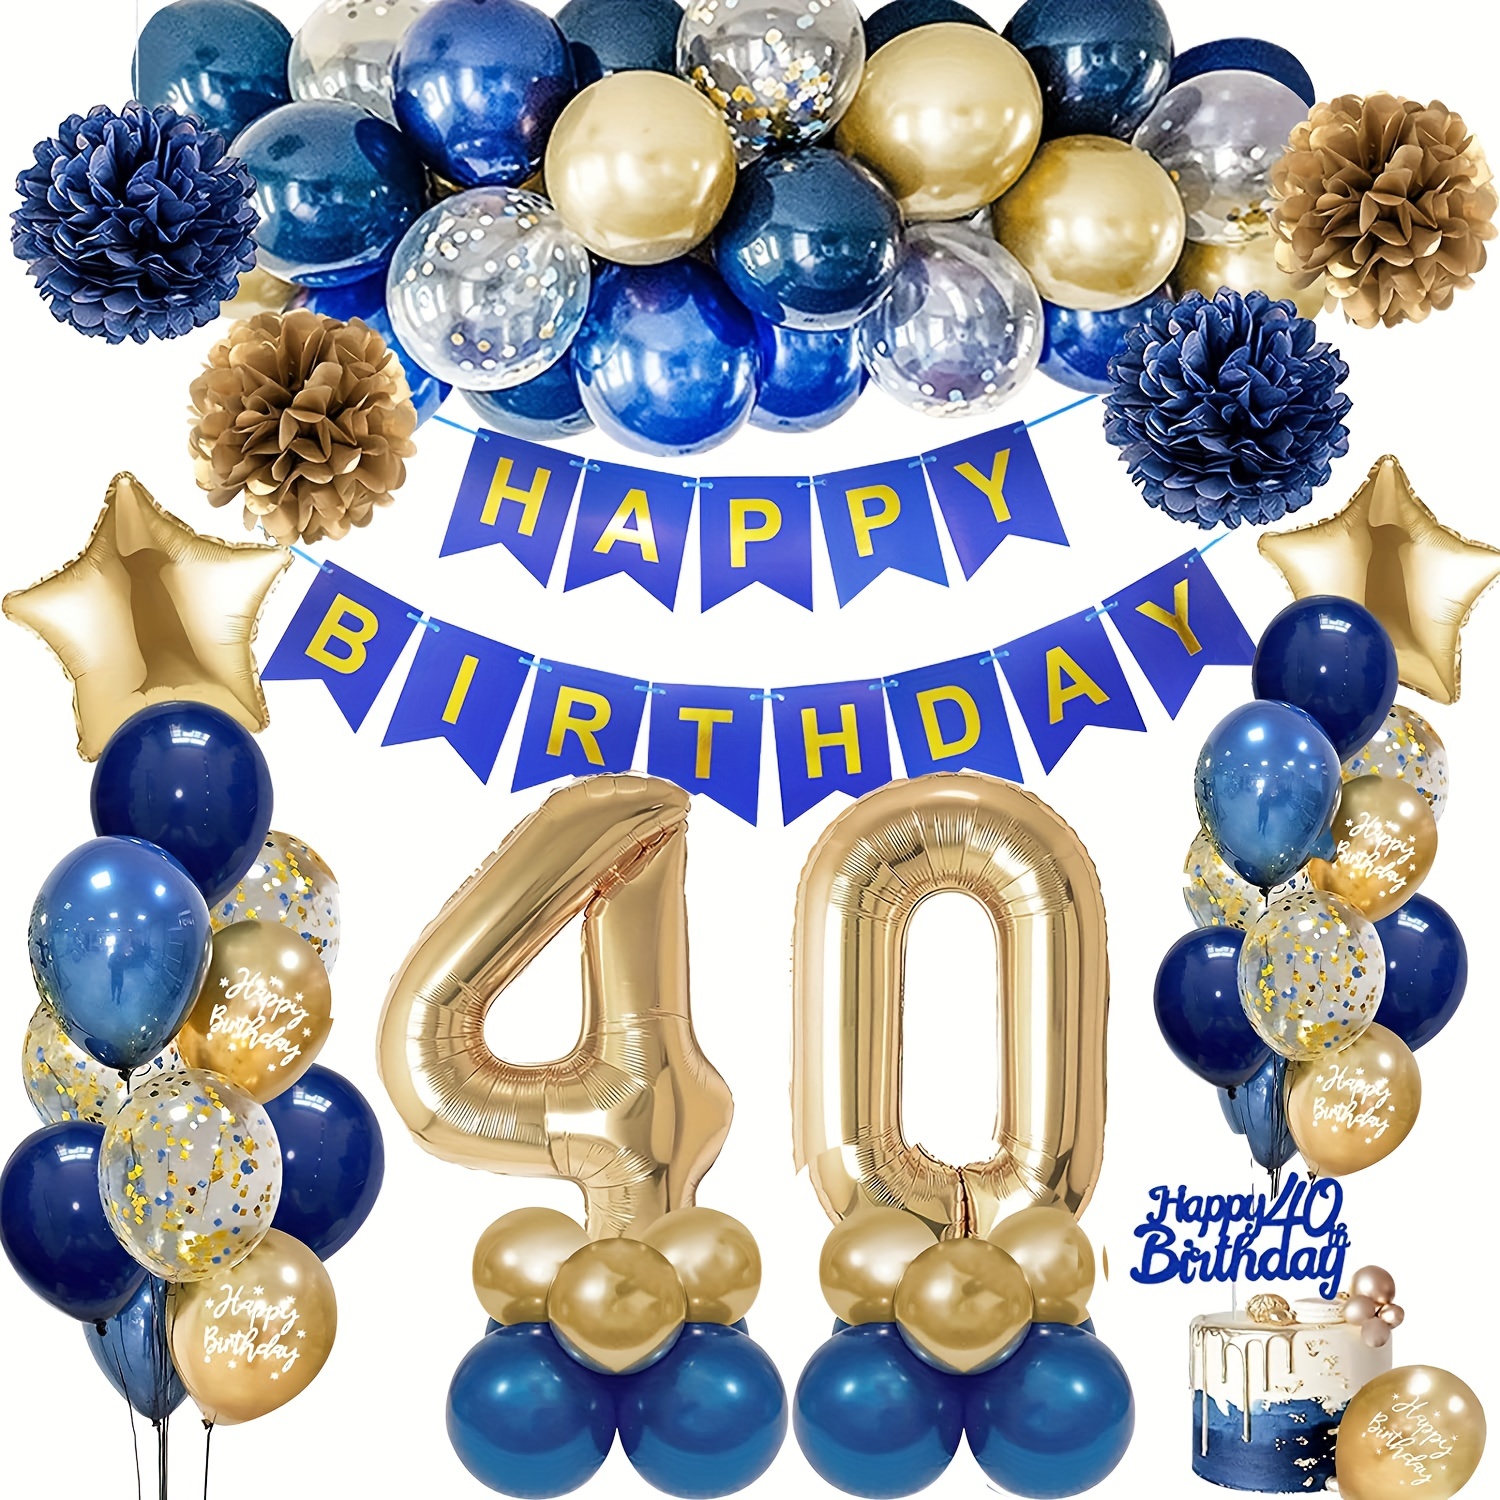 Palloncini 40 anni Compleanno Uomo Ragazzo, Decorazioni Compleanno Navy Blu  Argento, Addobbi Compleanno 40 Anni Decorazioni per Feste Compleanno per